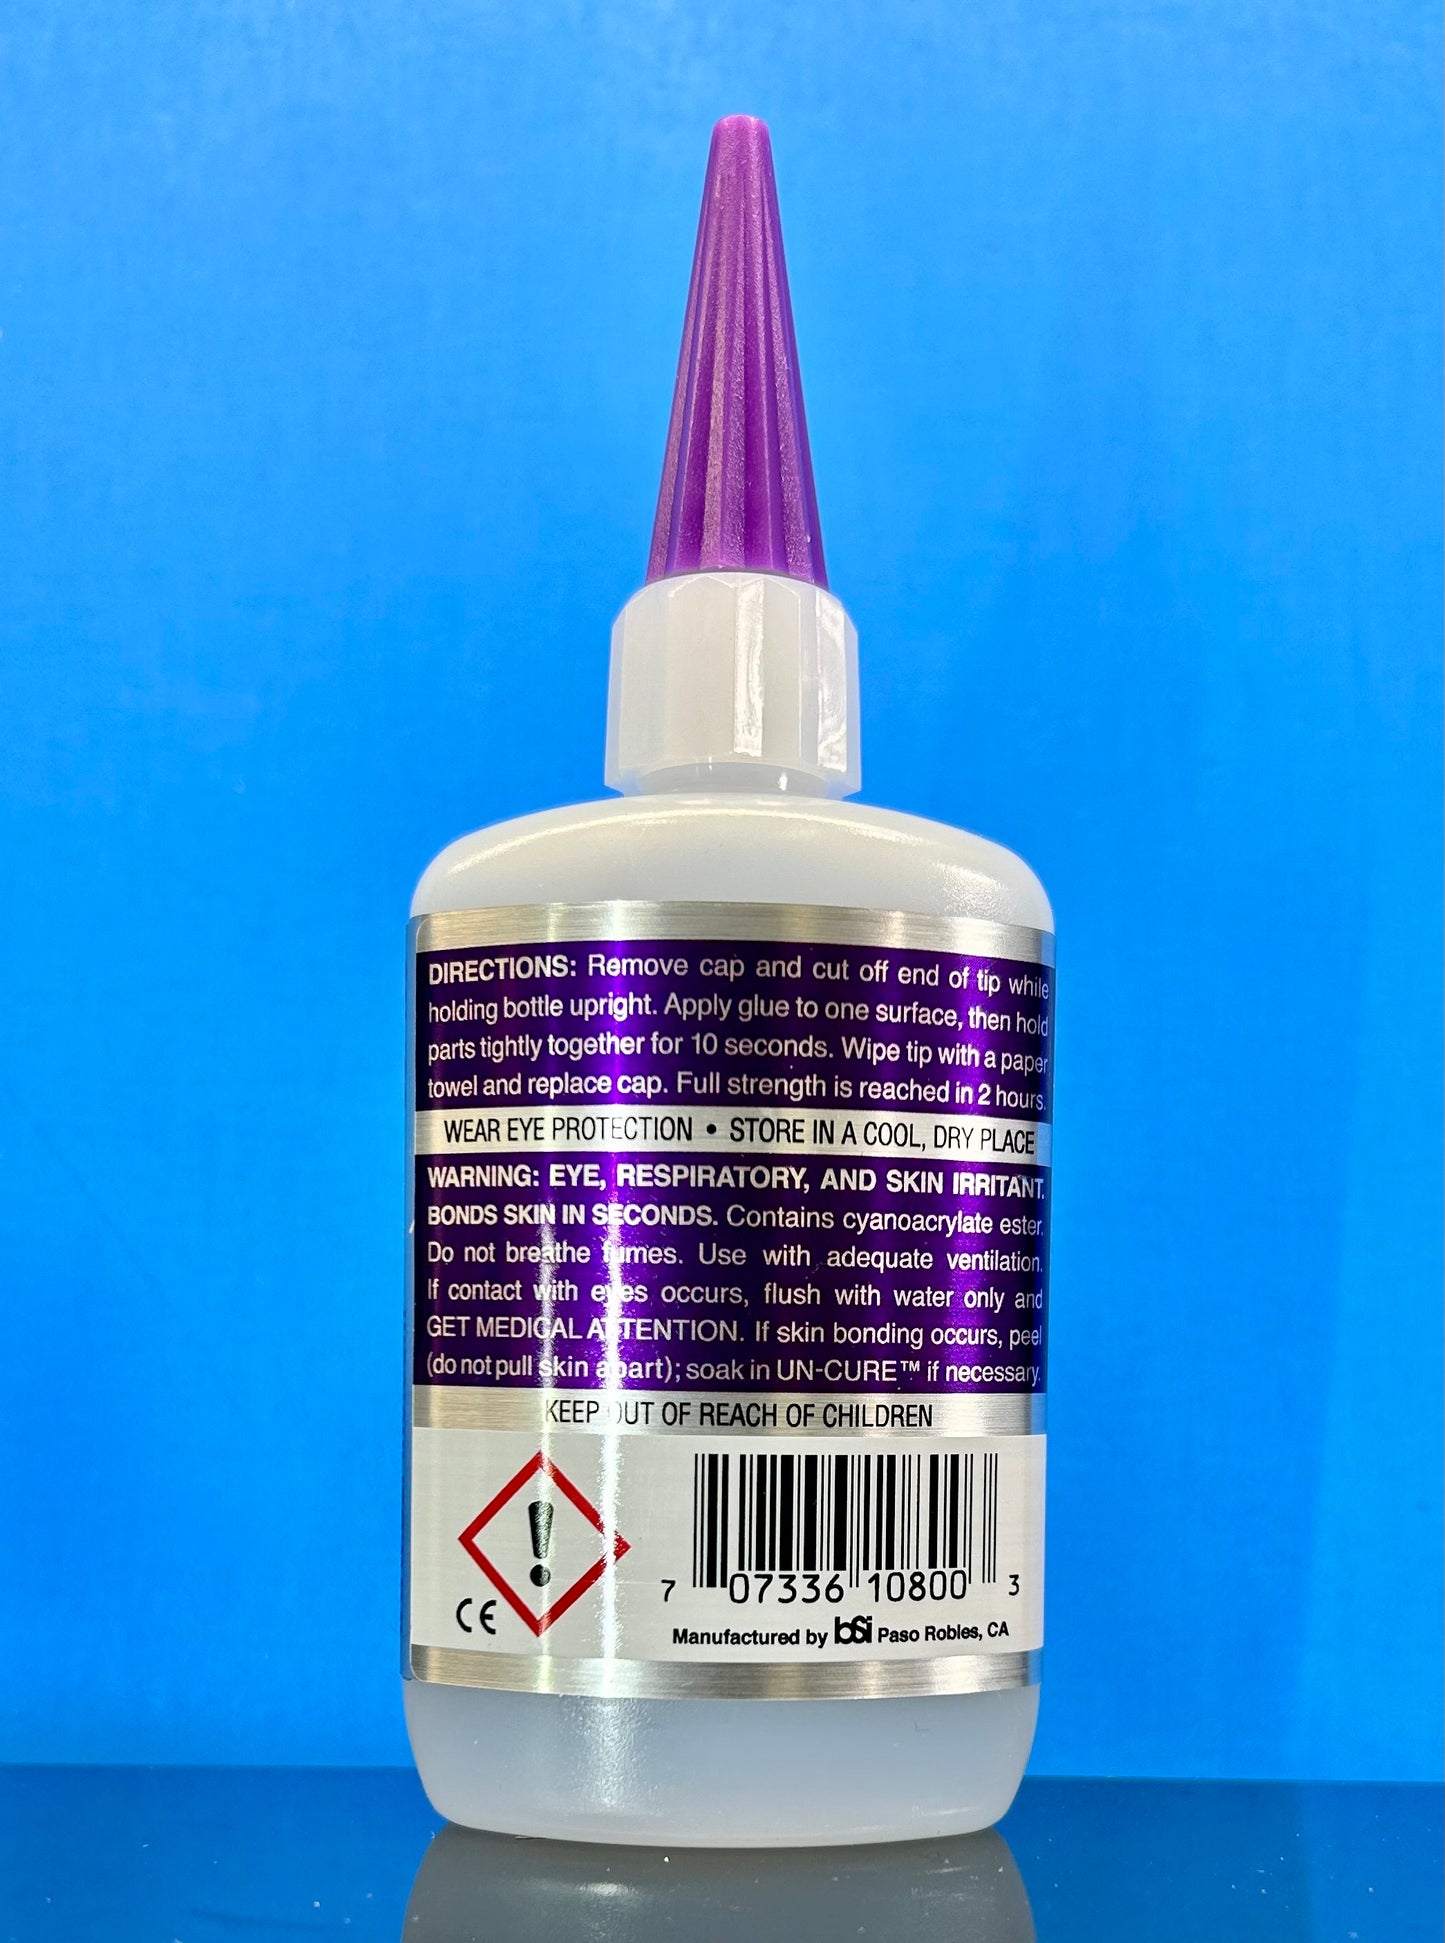 Bob Smith Insta-Cure+ Gap Filling Medium (2) oz. CA Cyanoacrylate Glue